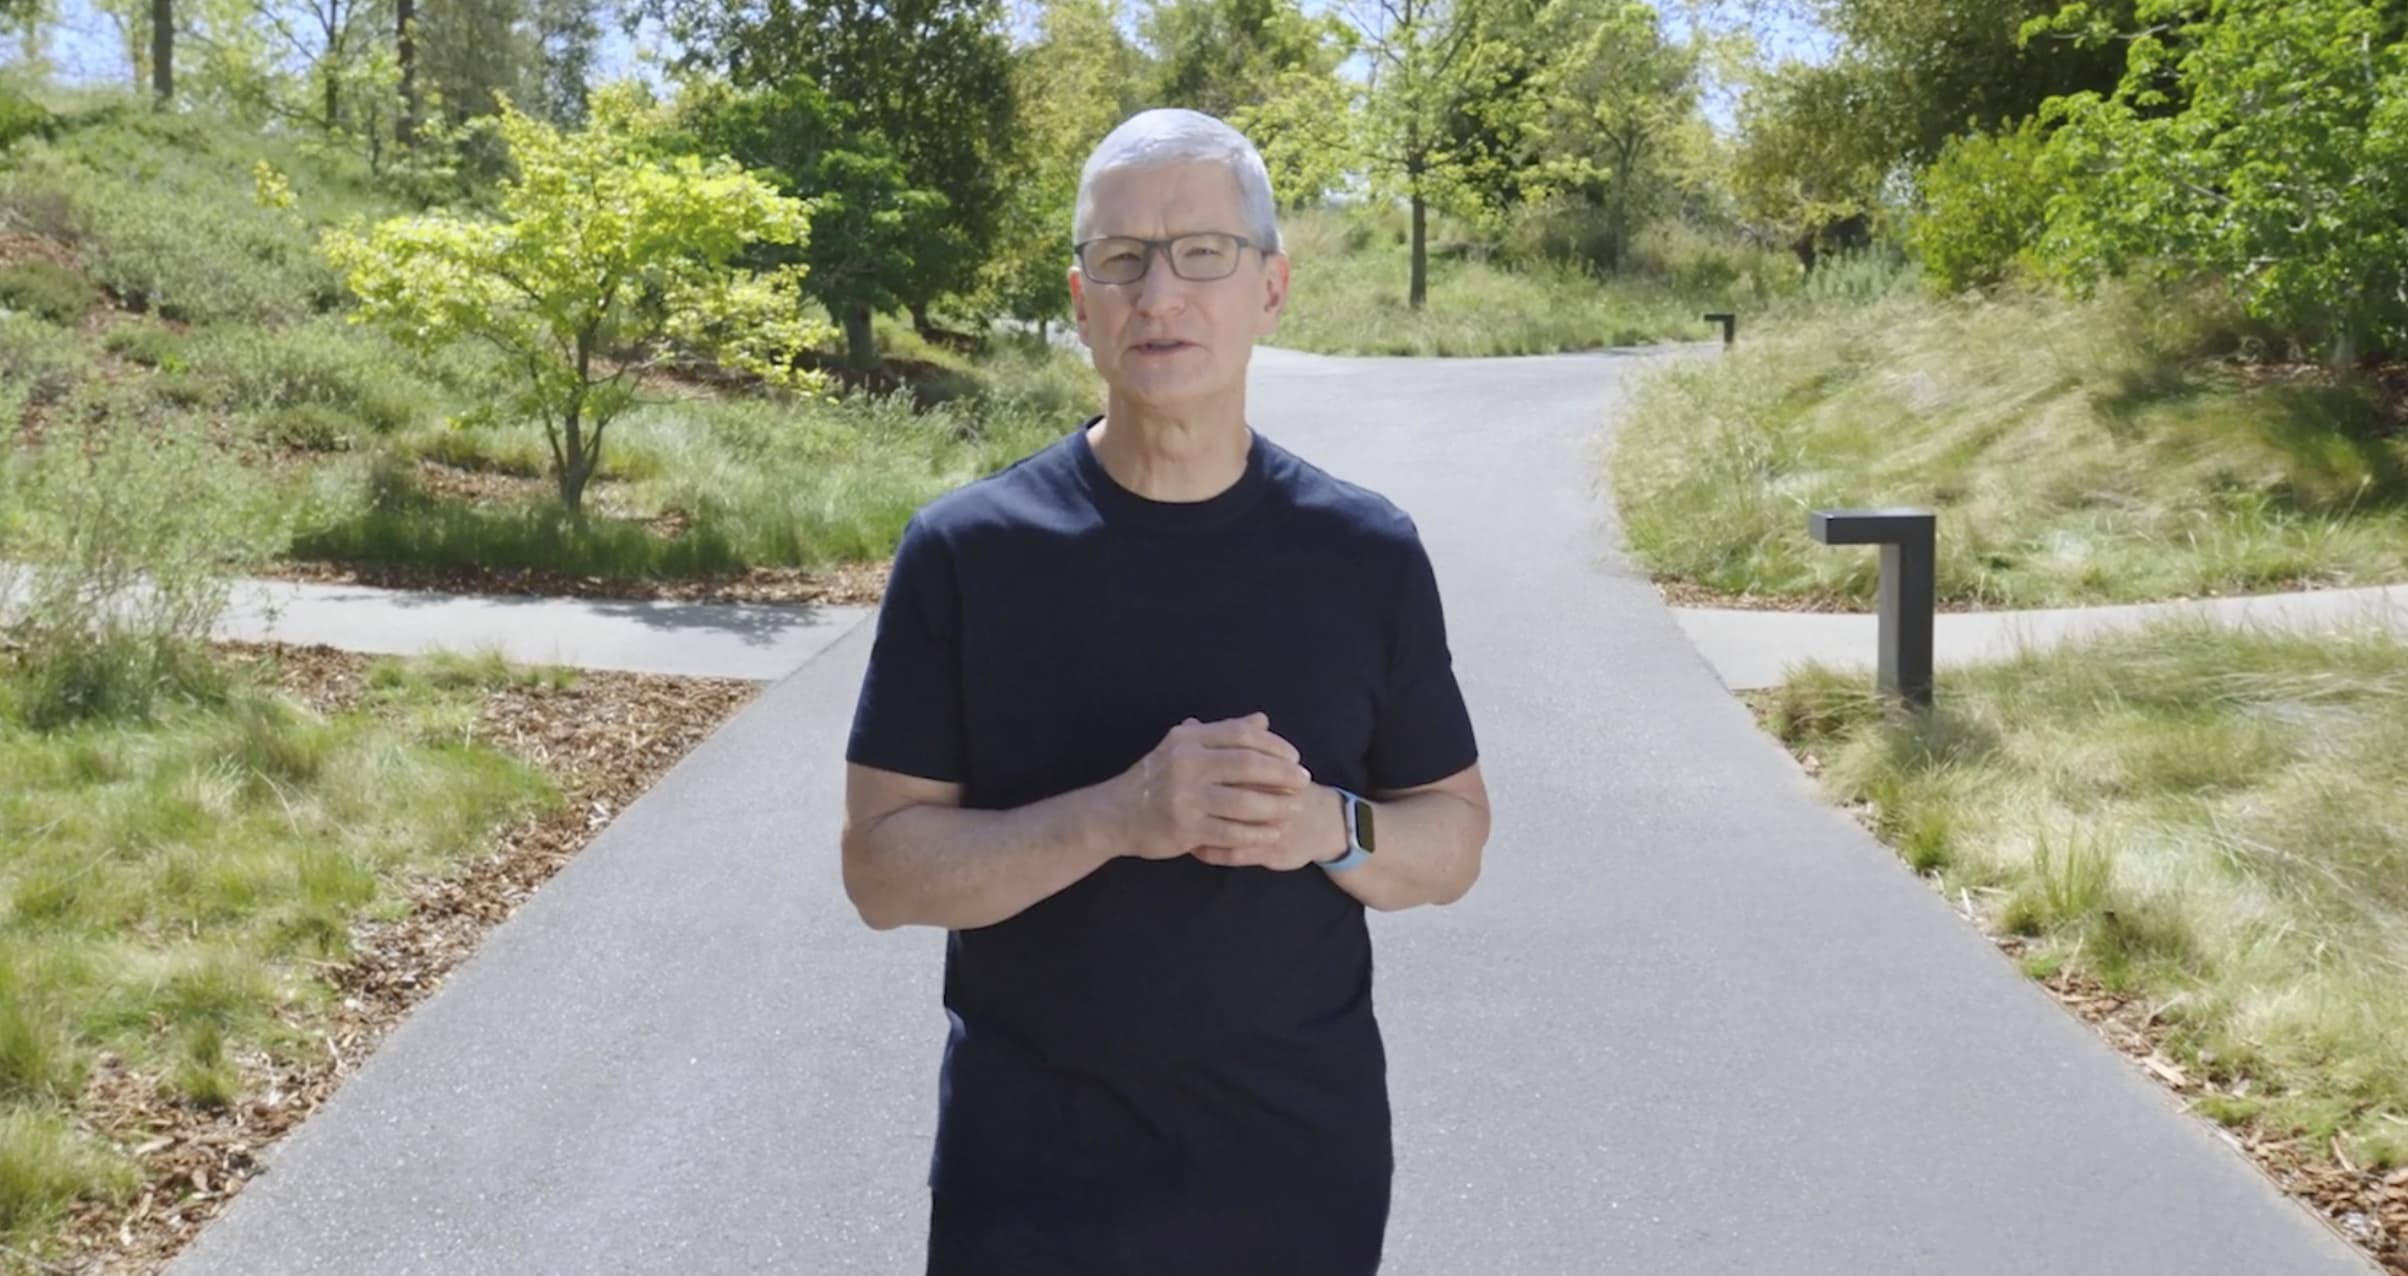 استراتيجية الرئيس التنفيذي لشركة Apple ، Tim Cook ، لتصفية ذهنه: الخروج